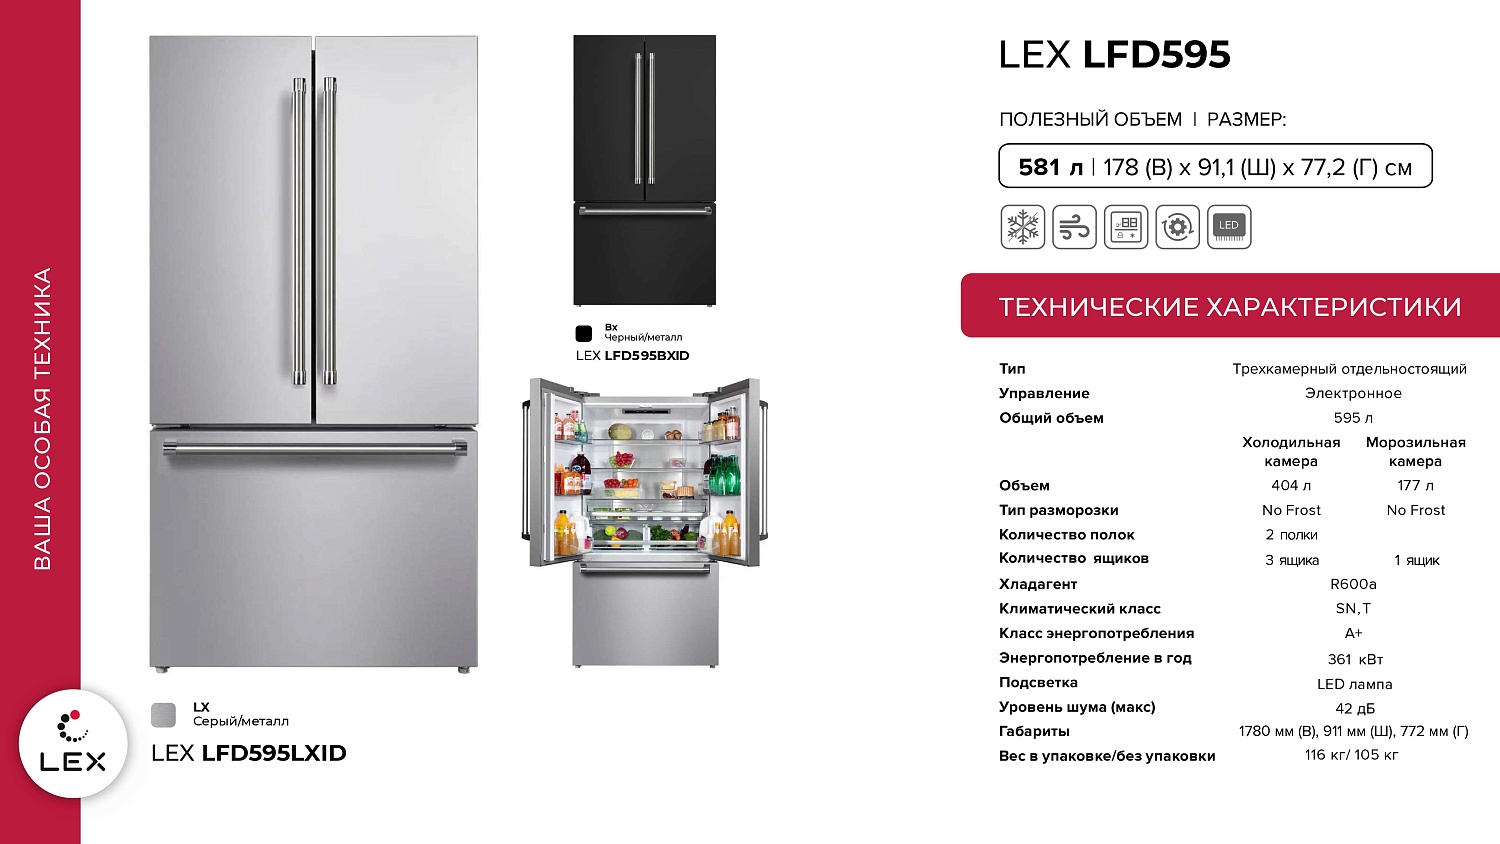 LEX LFD575/LFD595 Презентация новых холодильников